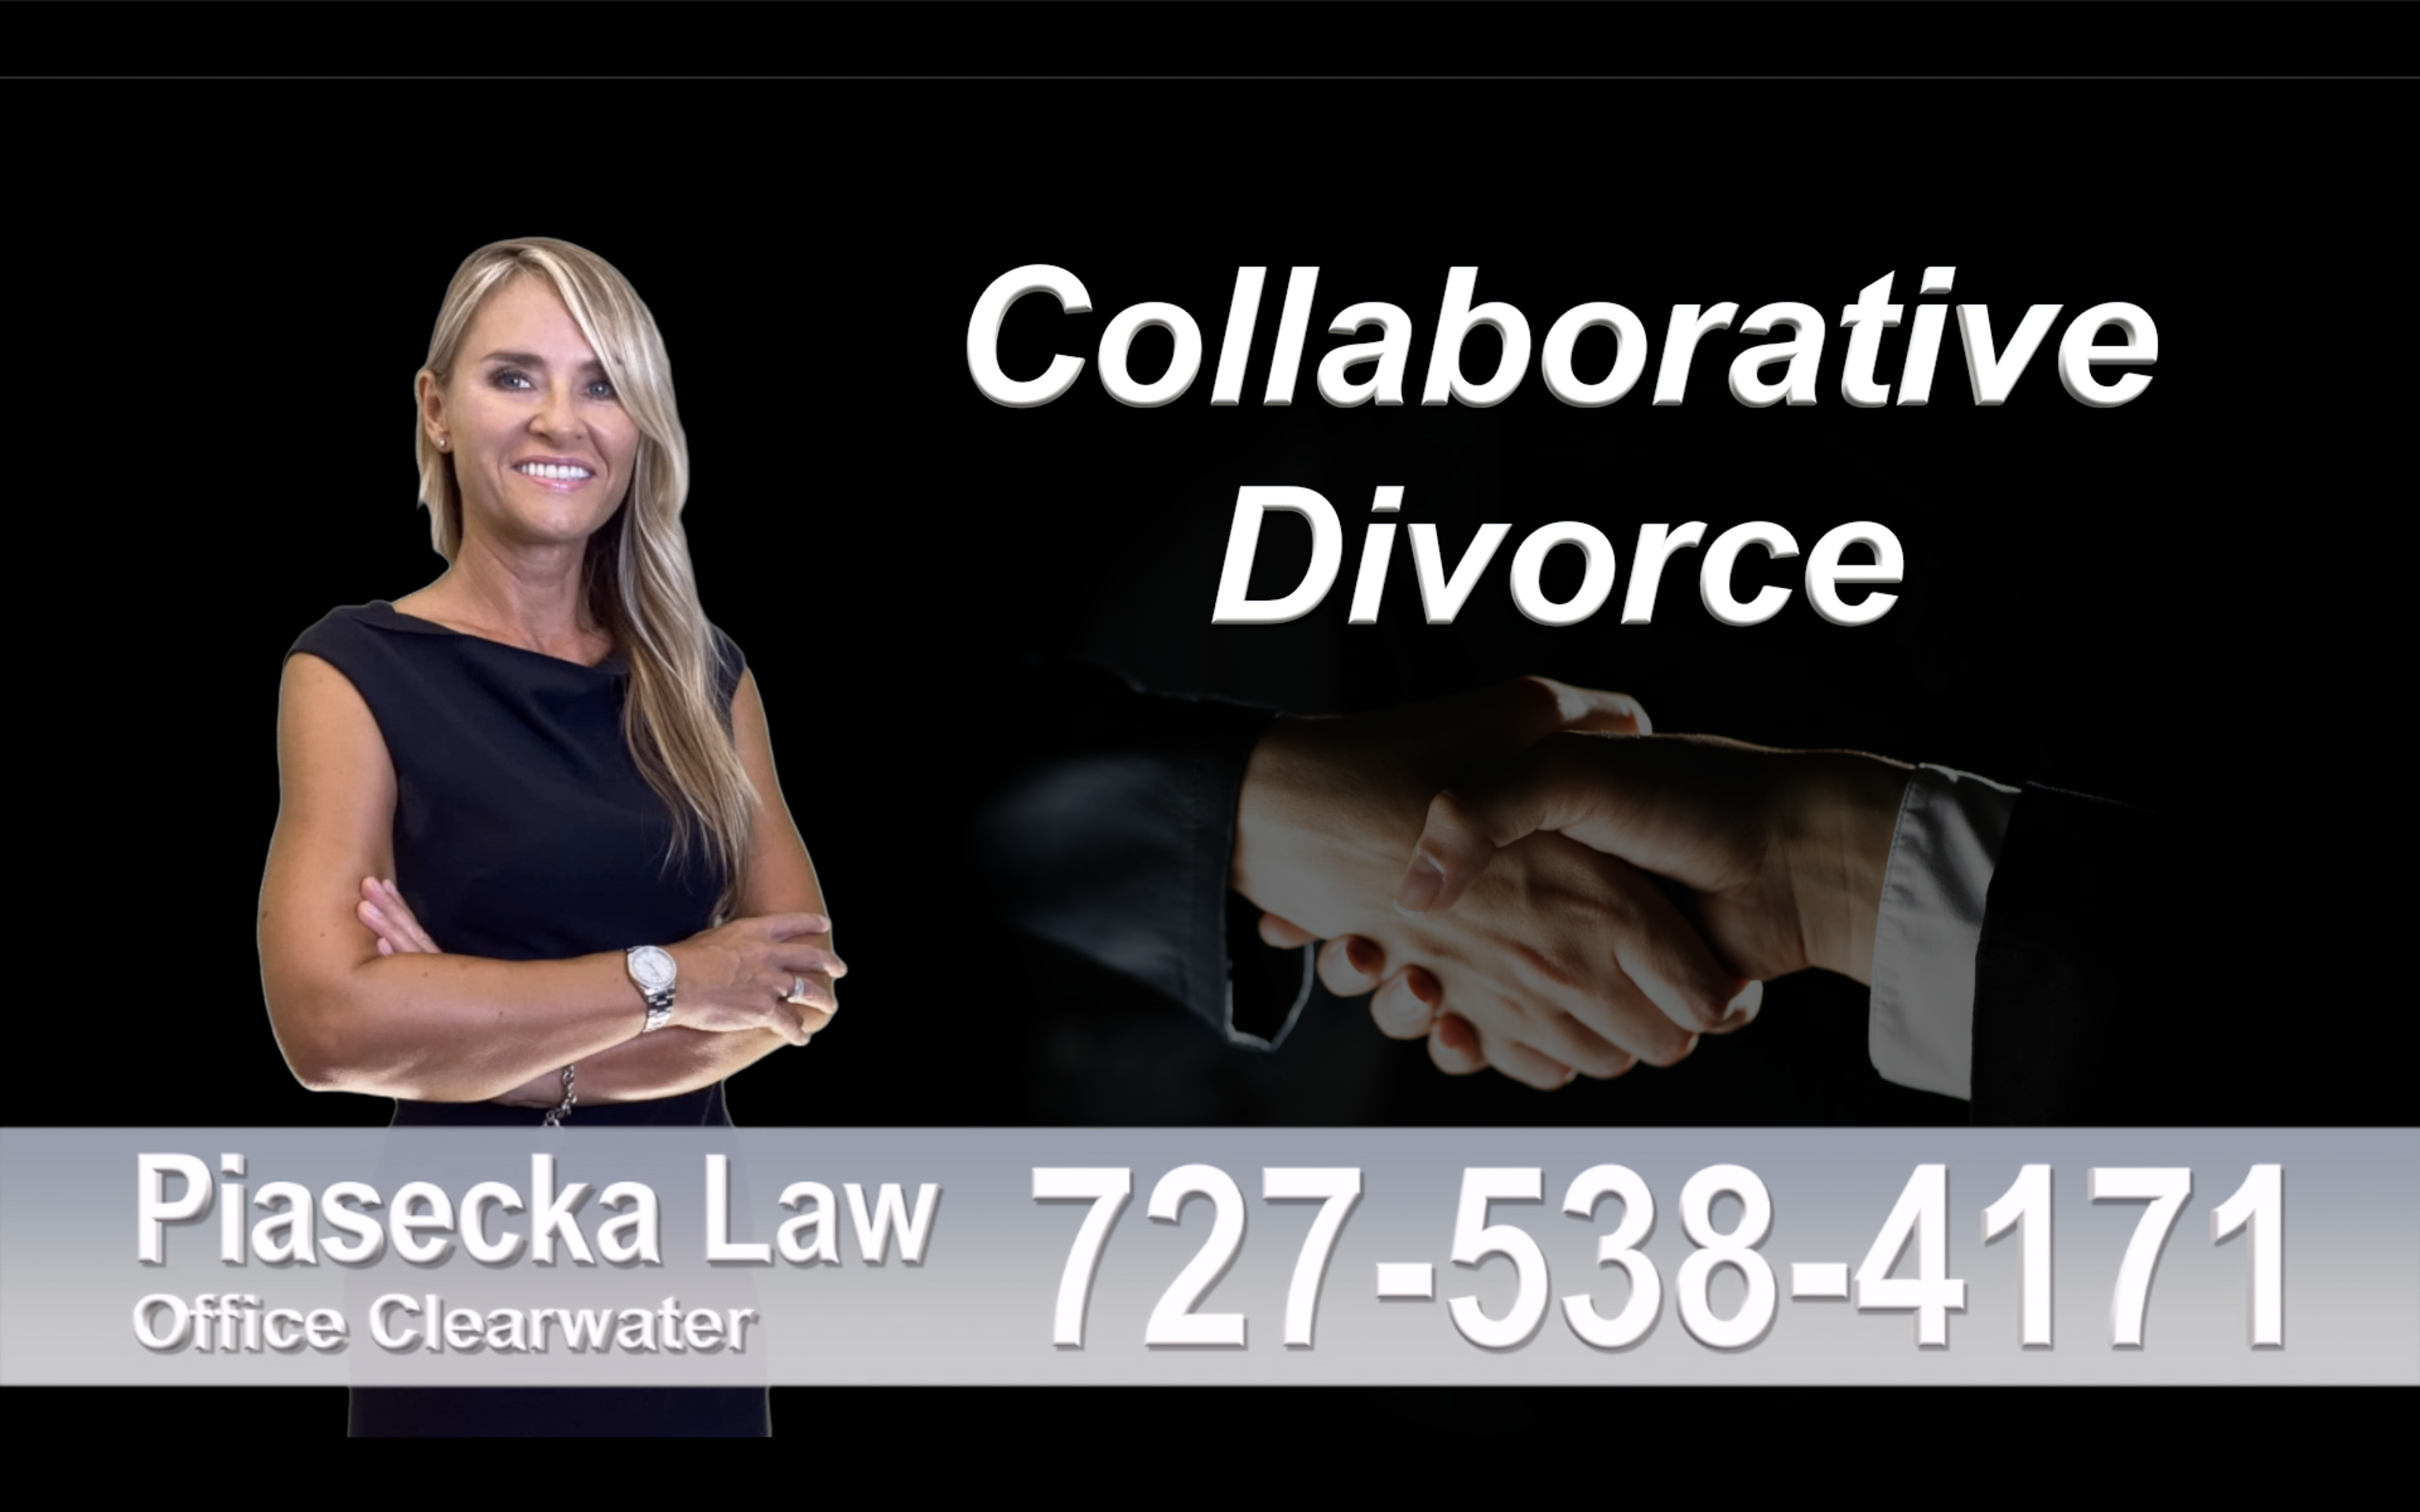 New Port Richey Collaborative, Divorce, Attorney, Agnieszka, Piasecka, Prawnik, Rozwodowy, Rozwód, Adwokat, rozwodowy, Najlepszy, Best, Collaborative, Divorce, Lawyer